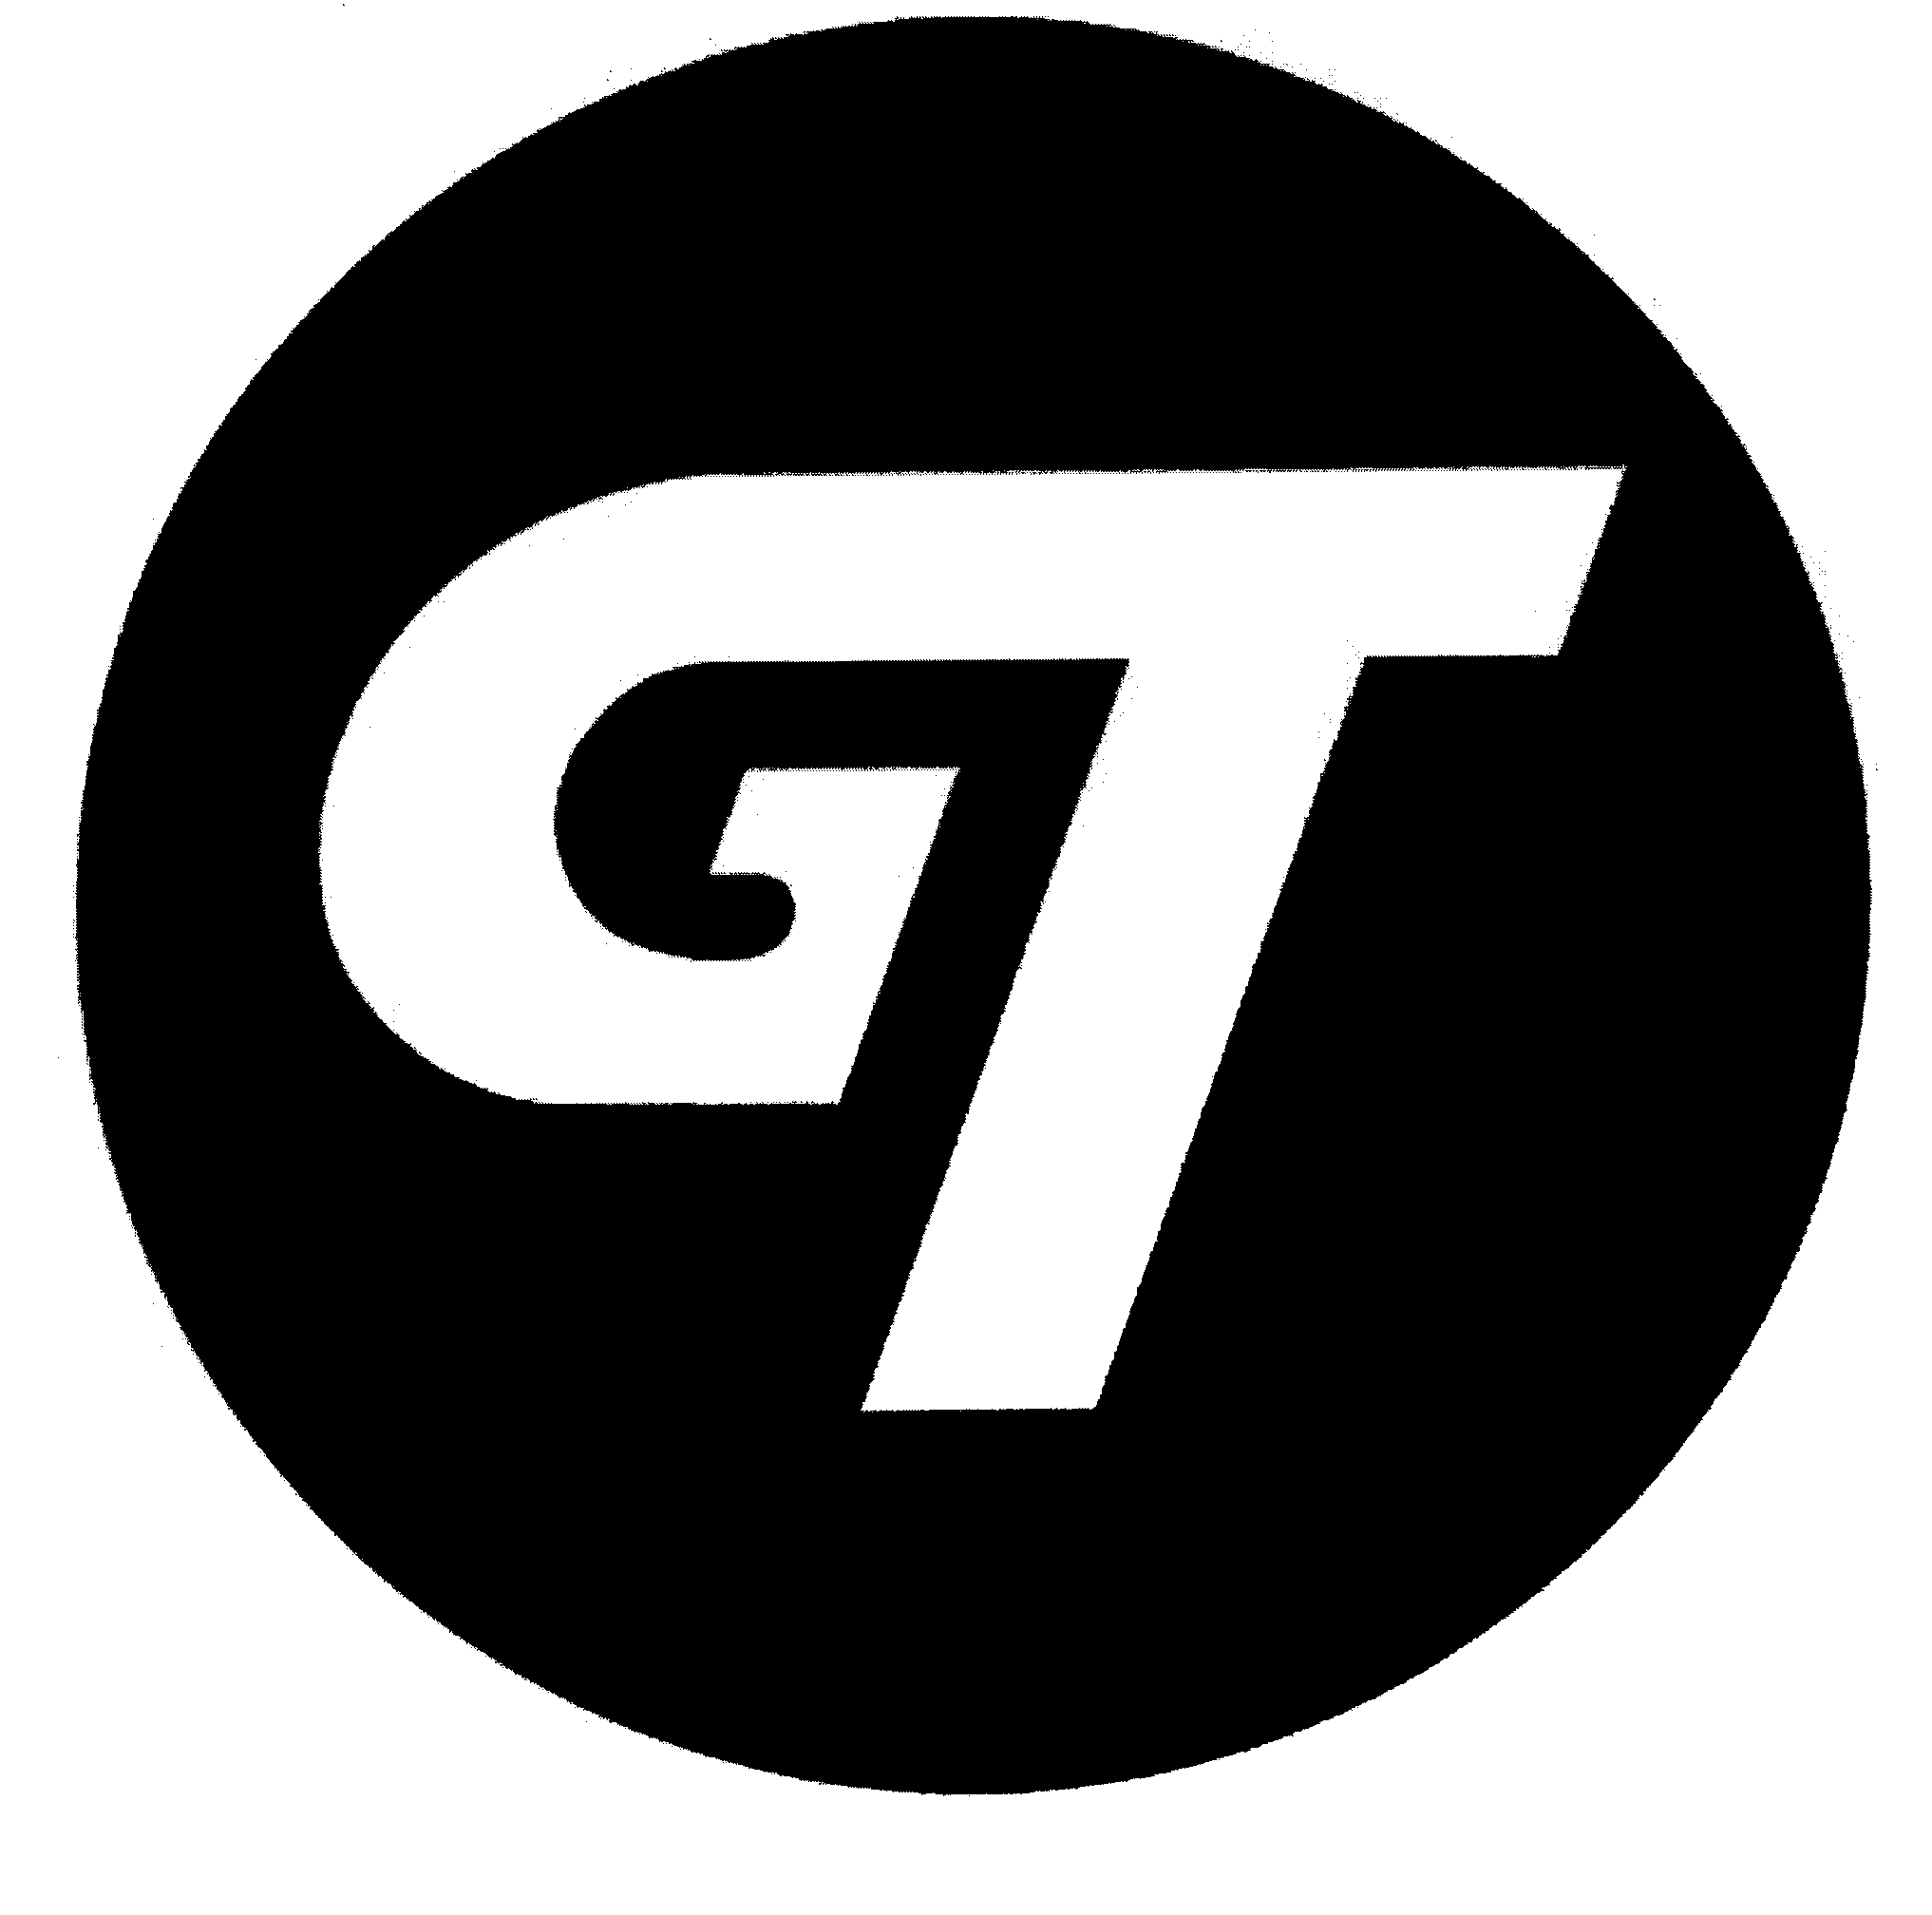  GT